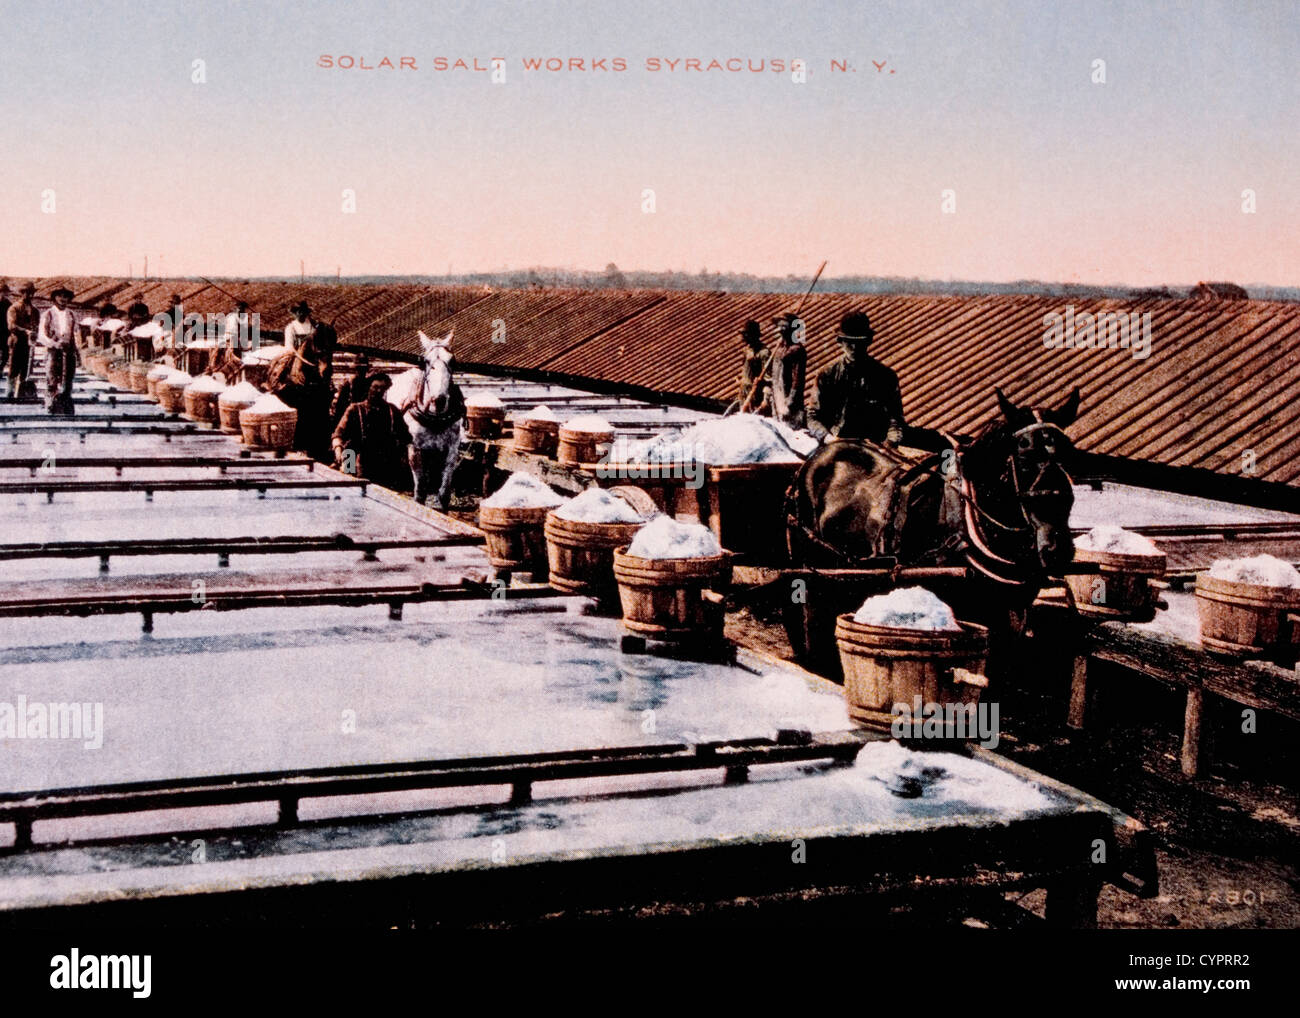 Salz, Schuppen und solare Evaporation Methode, Salzindustrie, Syrakus, New York, USA, handkolorierten Foto, ca. 1908 Stockfoto